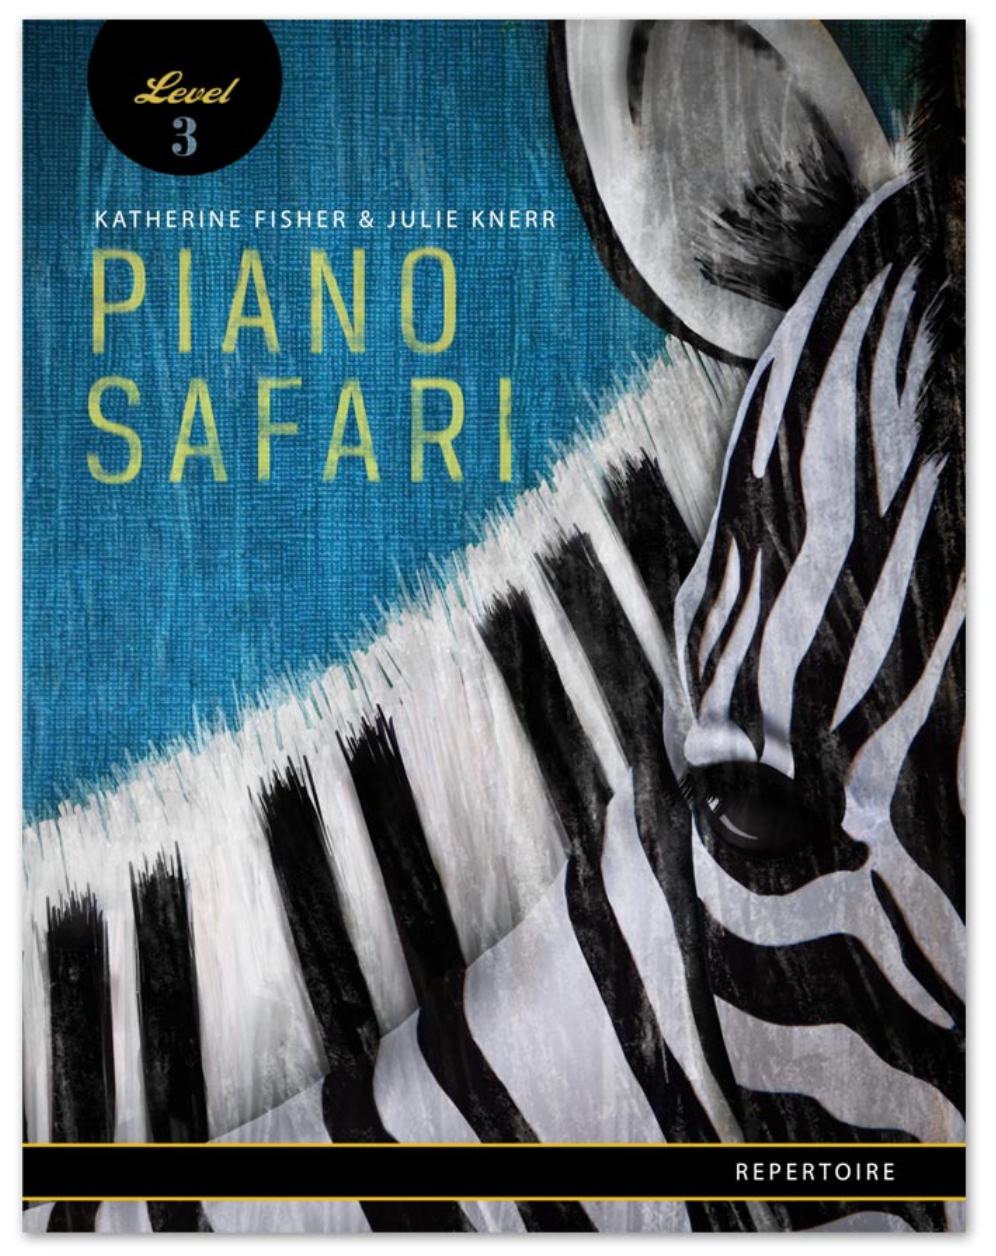 Piano Safari Repertoire 3 - Fisher Katherine; Hague Julie Knerr Piano Safari PNSF1010